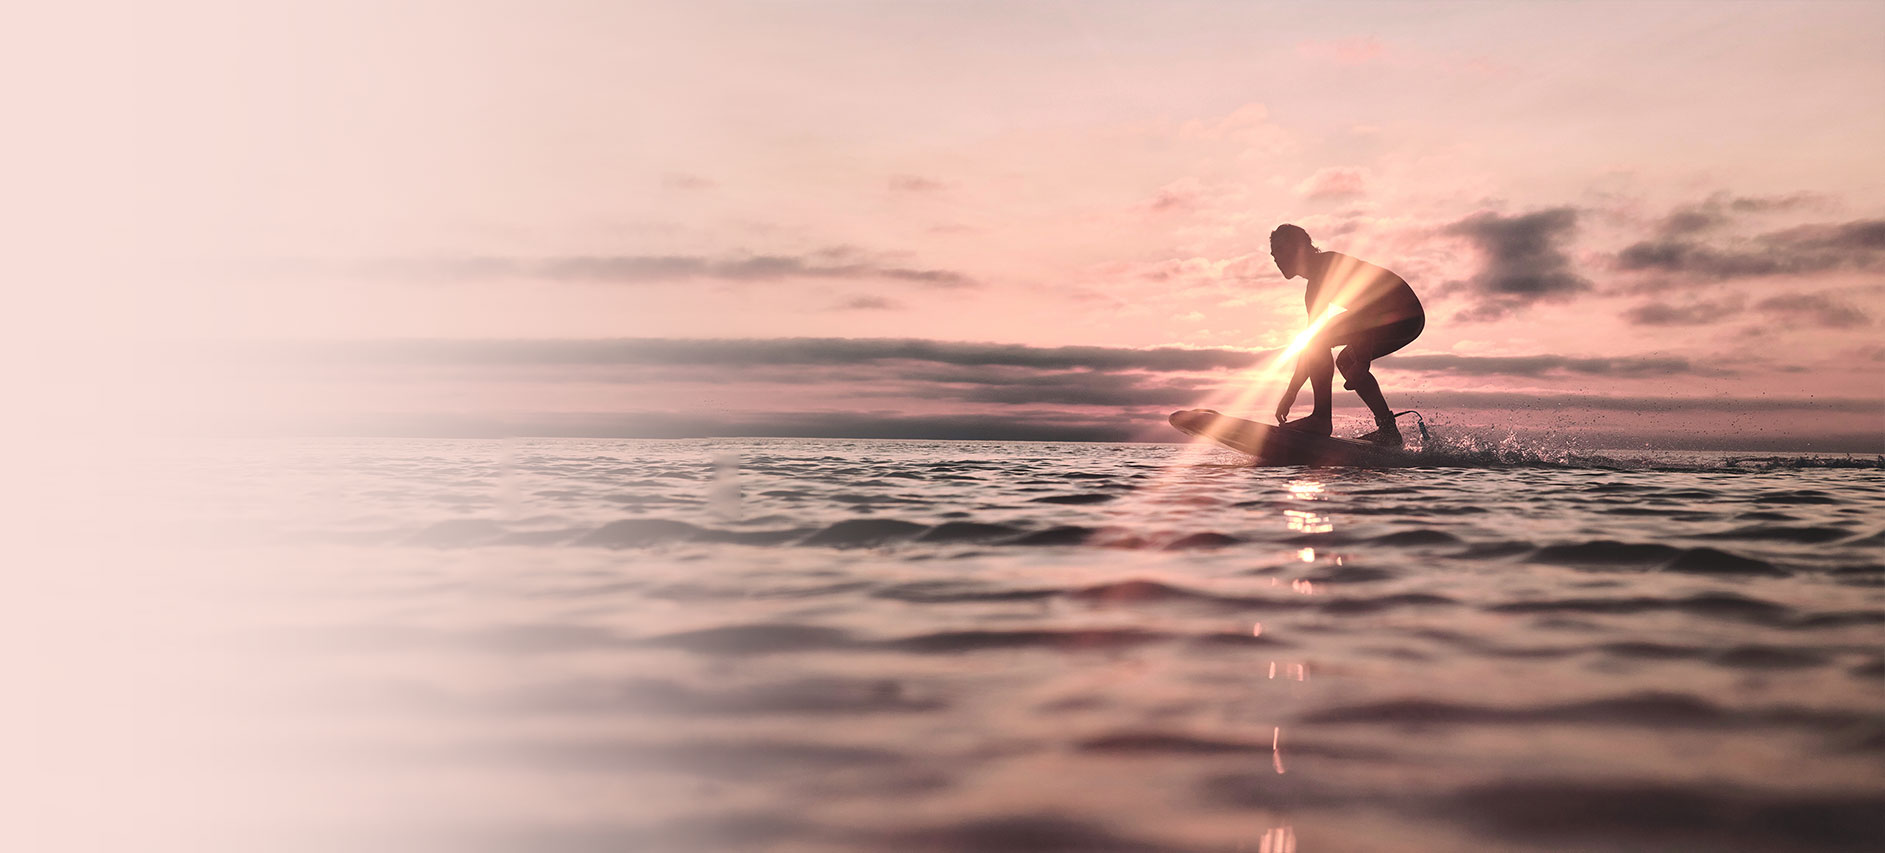 soleil levant avec un surfeur